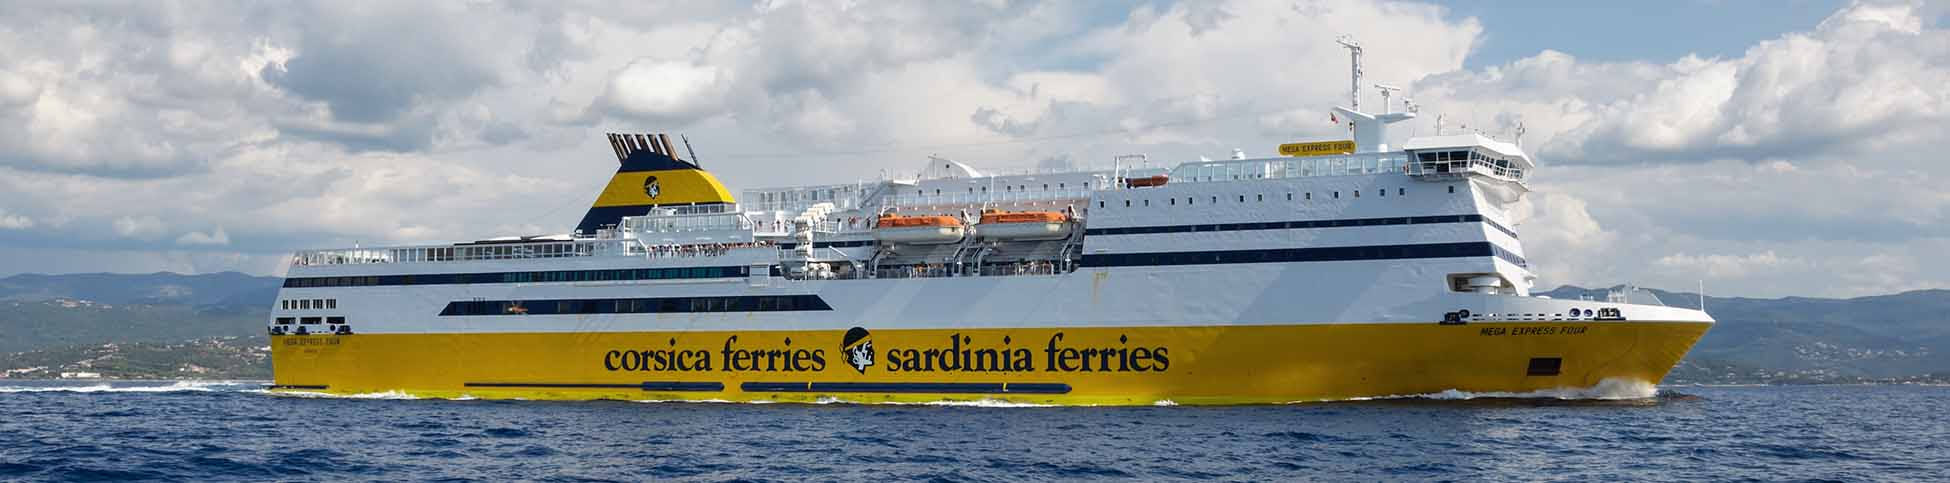 Imatge recurs del port de destinació Porto Torres per a la ruta en ferry Toló - Porto Torres